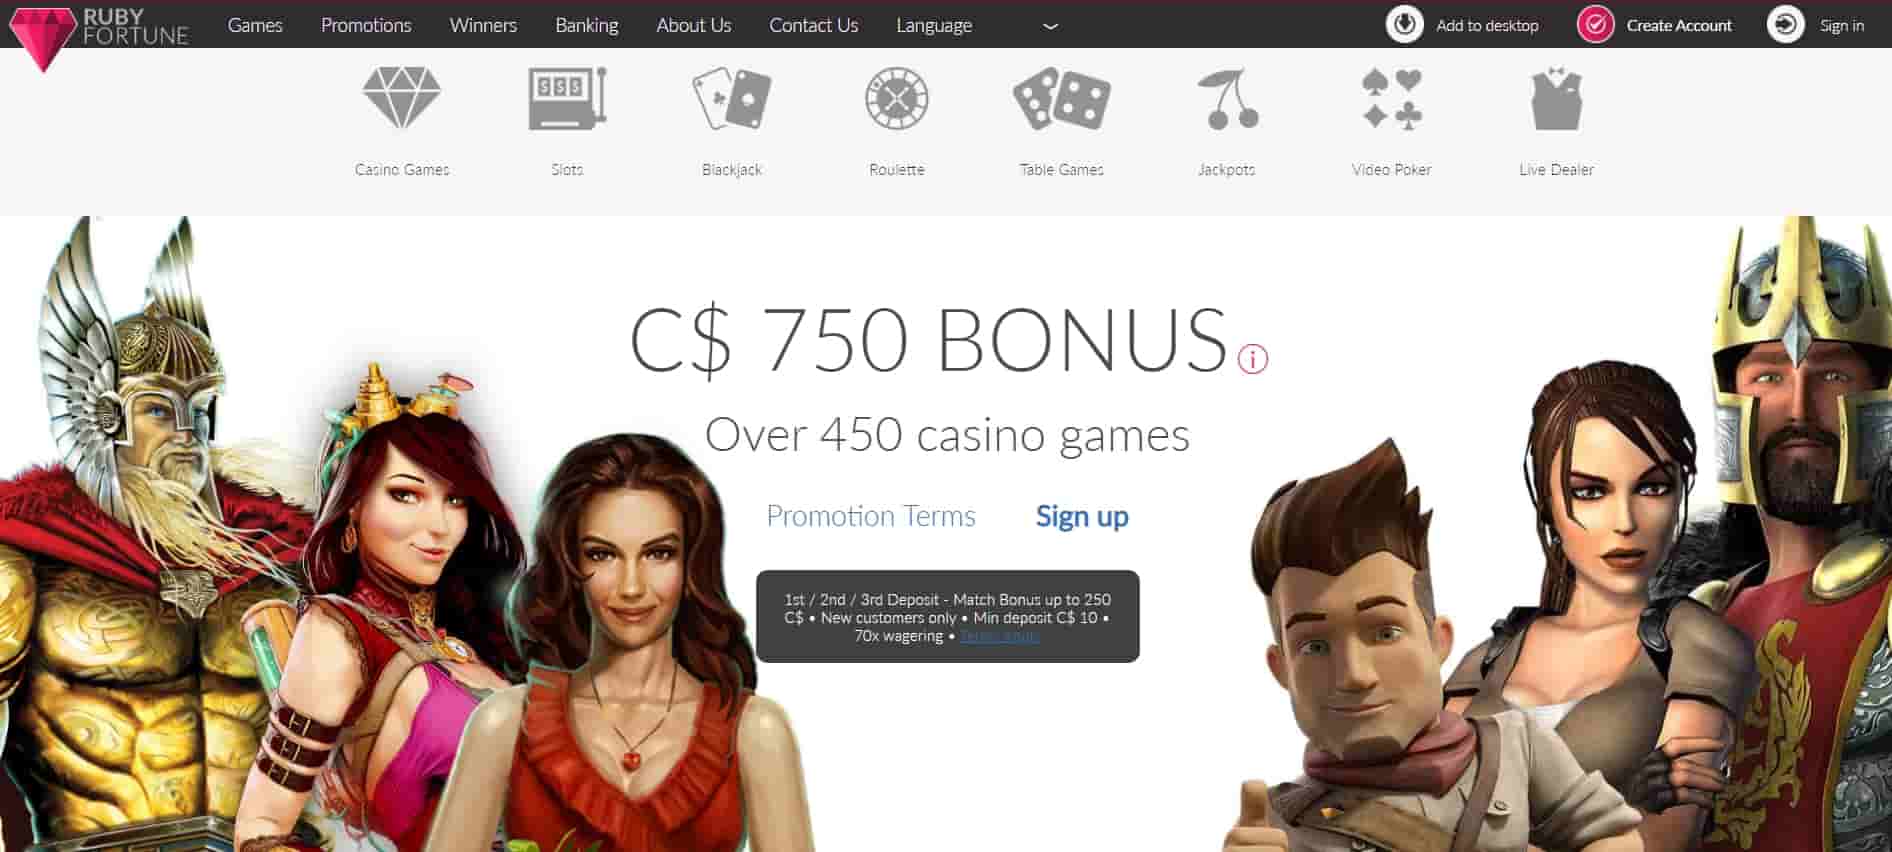 RubyFortune Casino Online